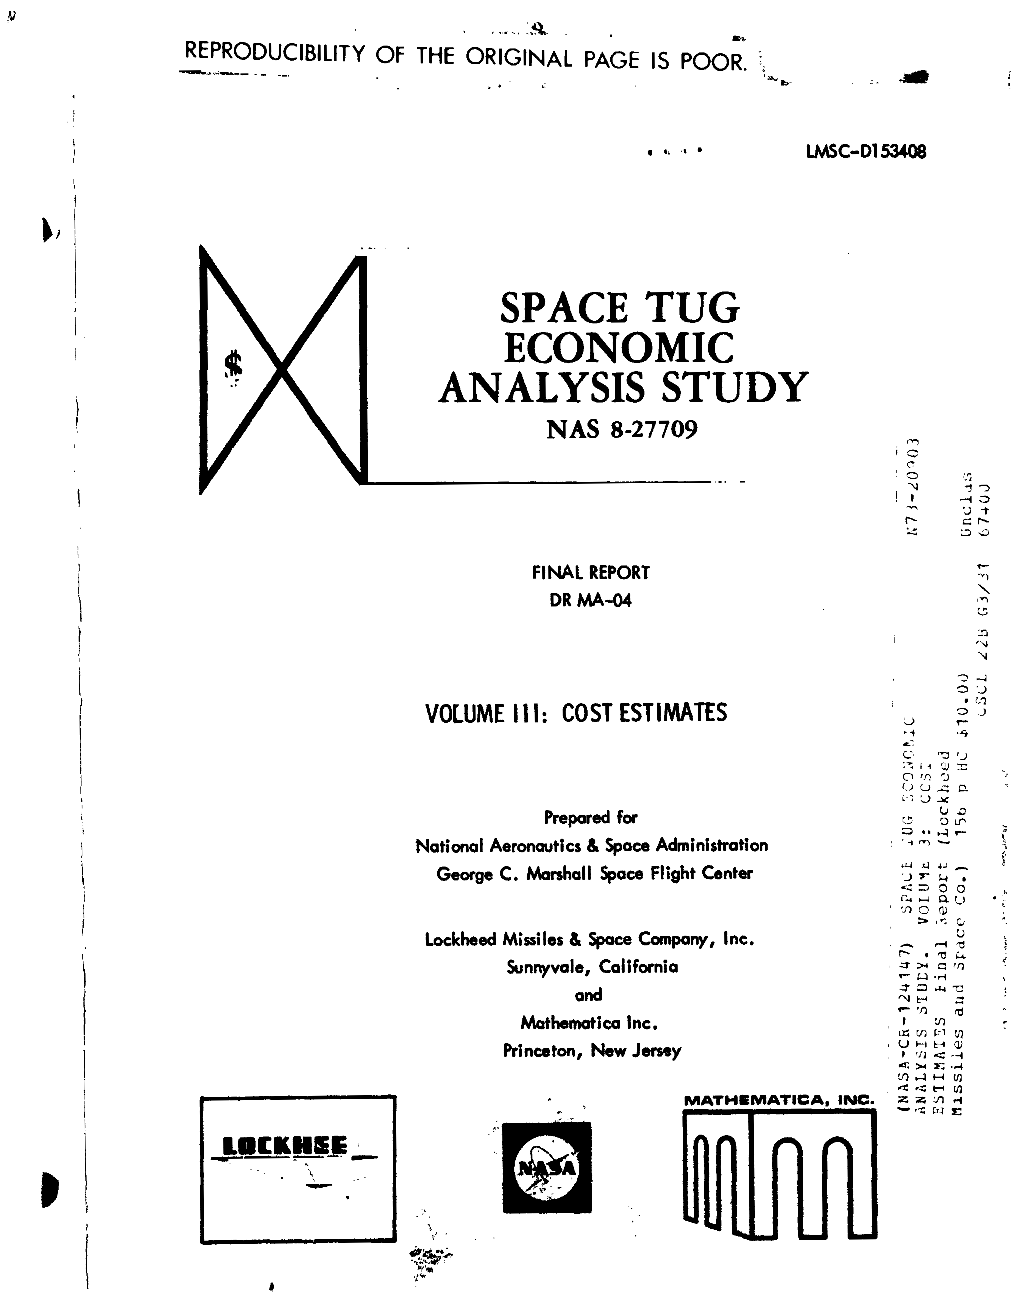 Space Tug Economic Analysis Study Nas 8-27709